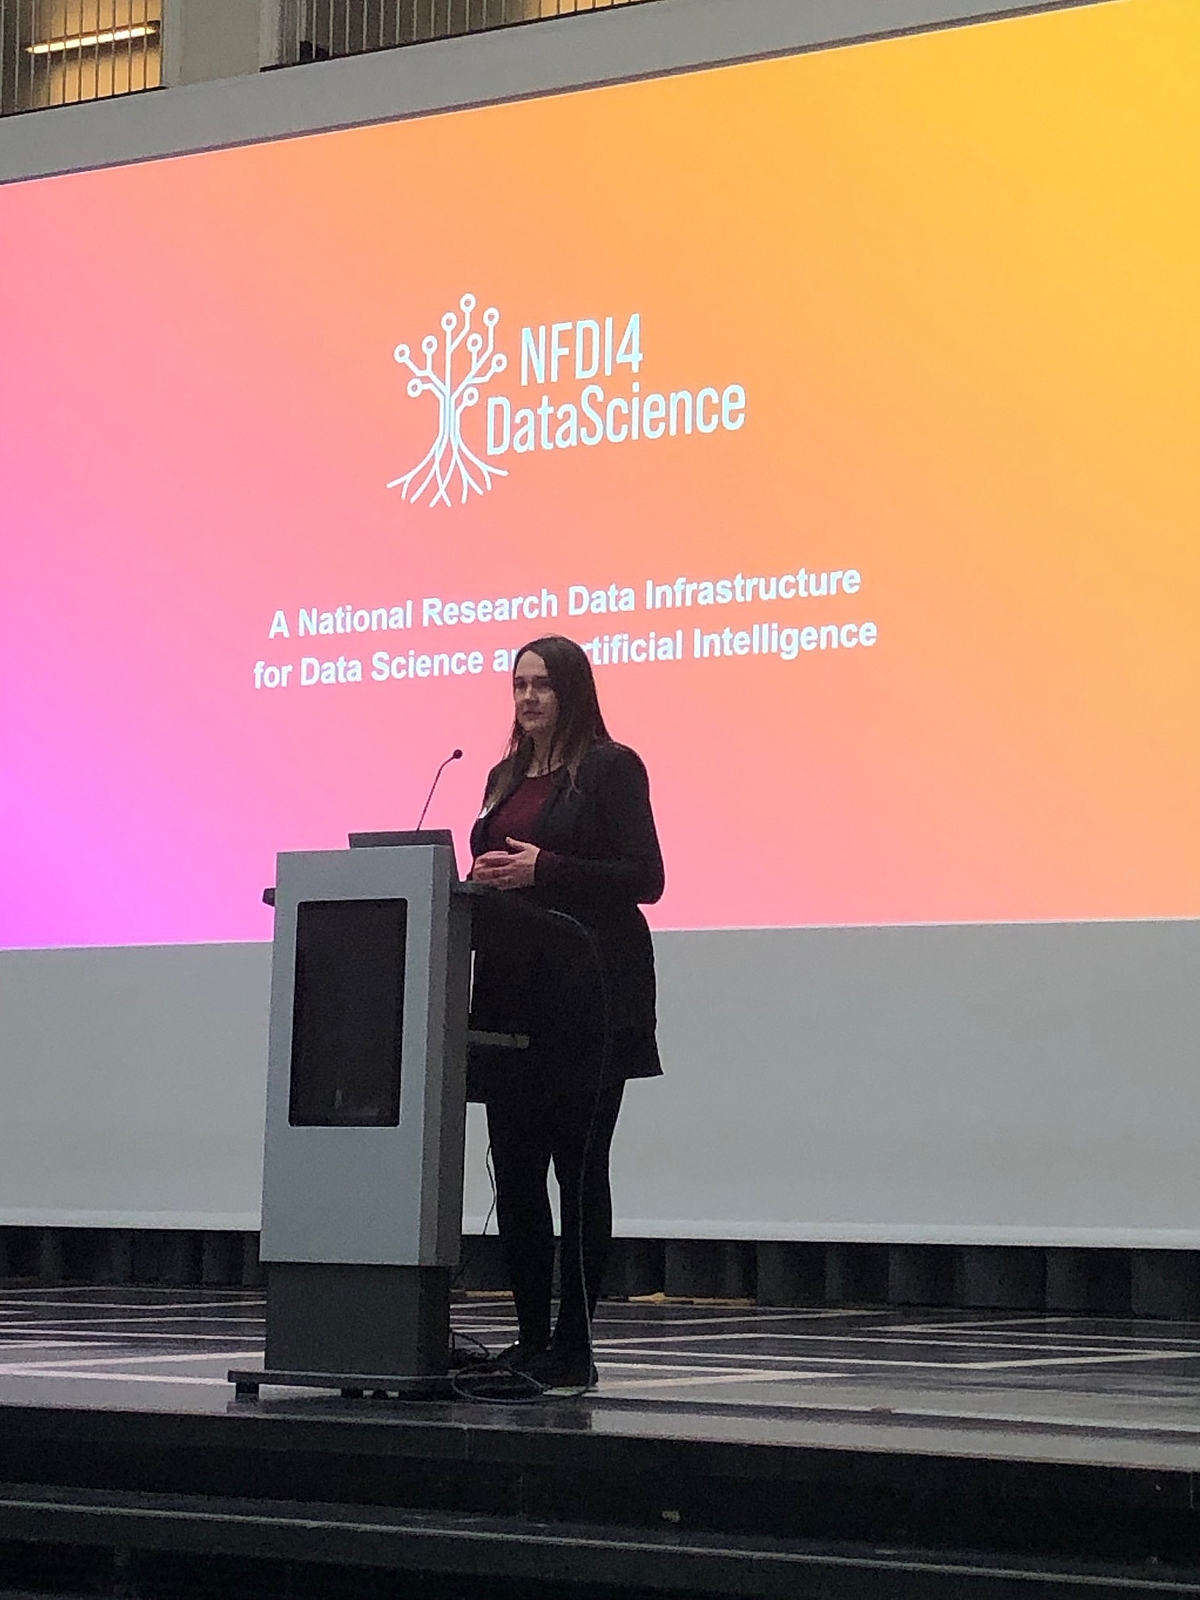 Vortrag zu NFDI4DataScience von Dr. Anna-Lena Lorenz